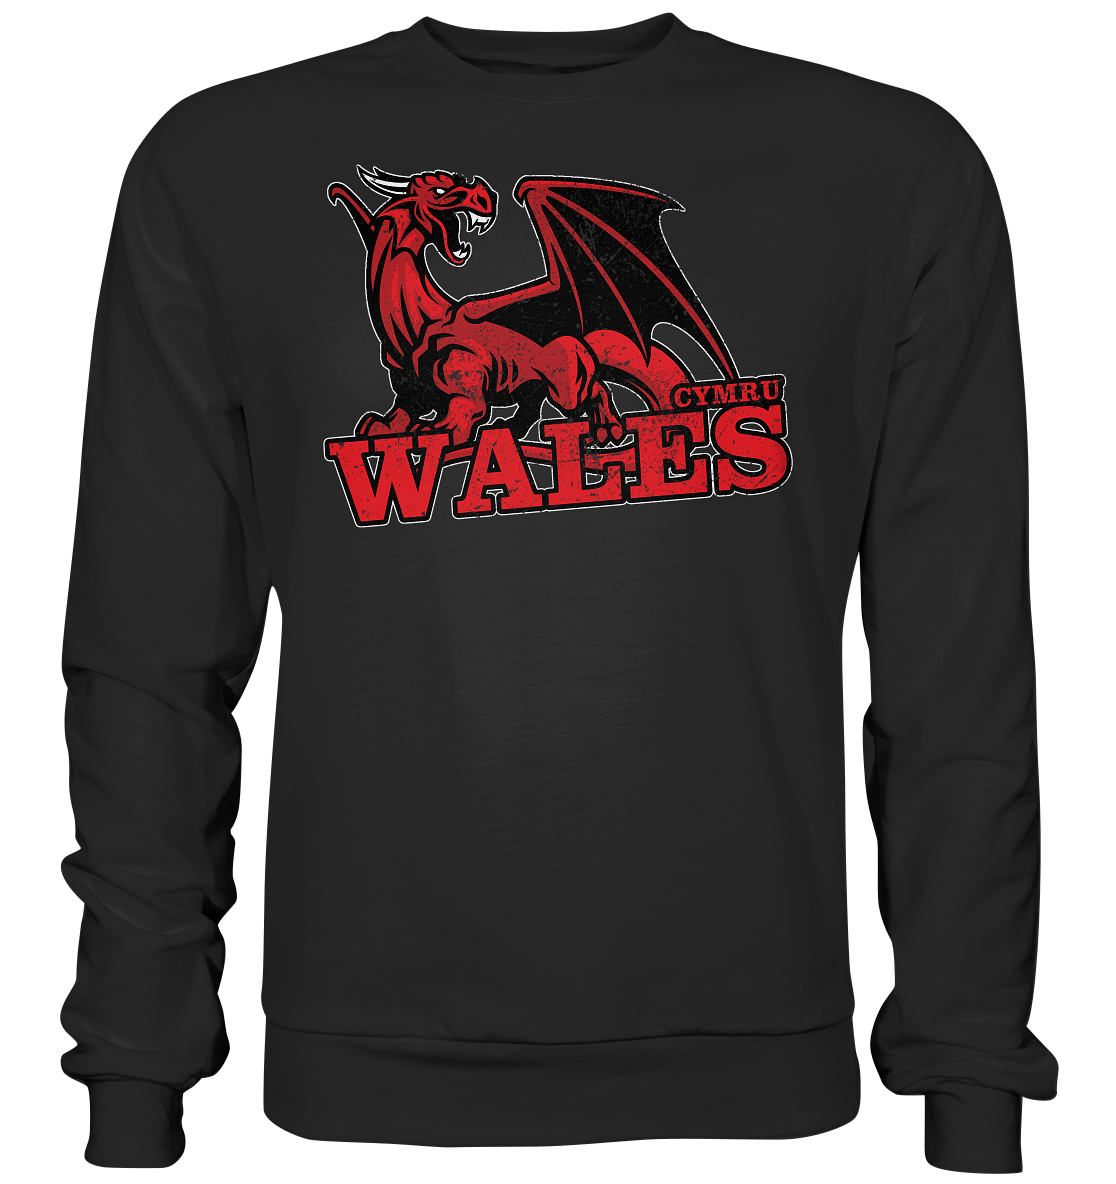 Wales "Cymru" - Premium Sweatshirt